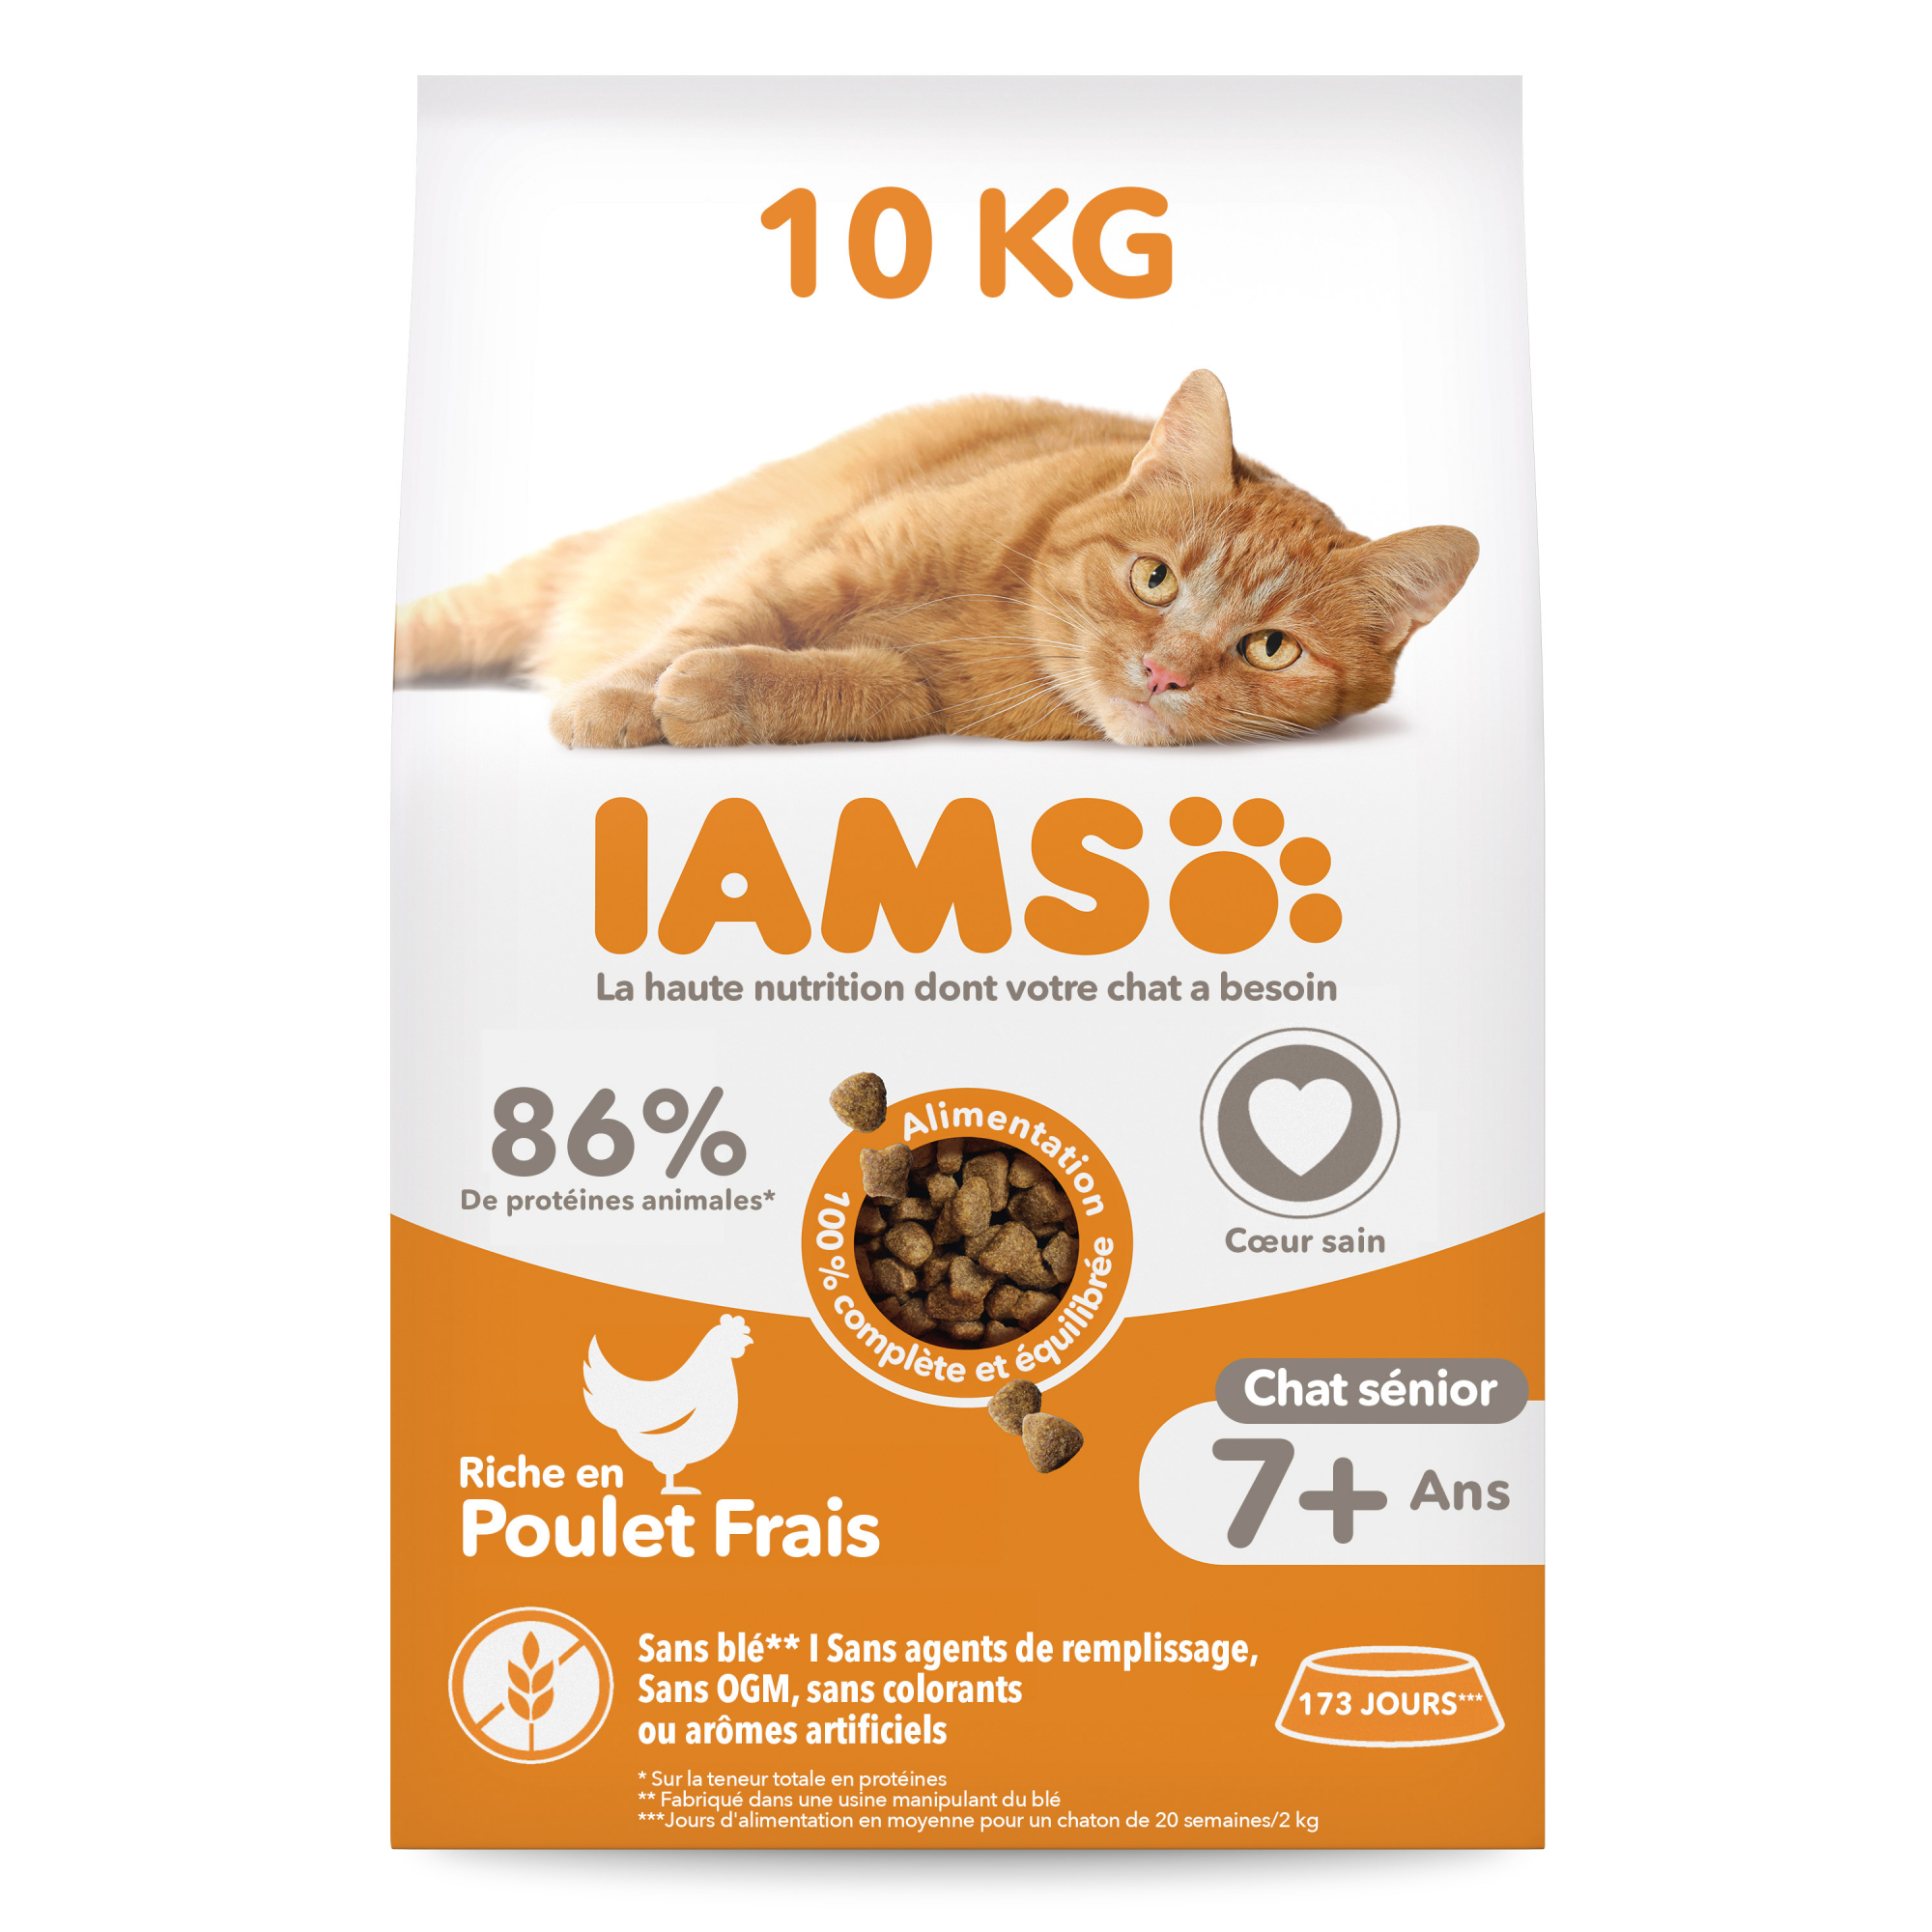 IAMS Advanced Nutrition Senior Pollo fresco pienso para gatos mayores